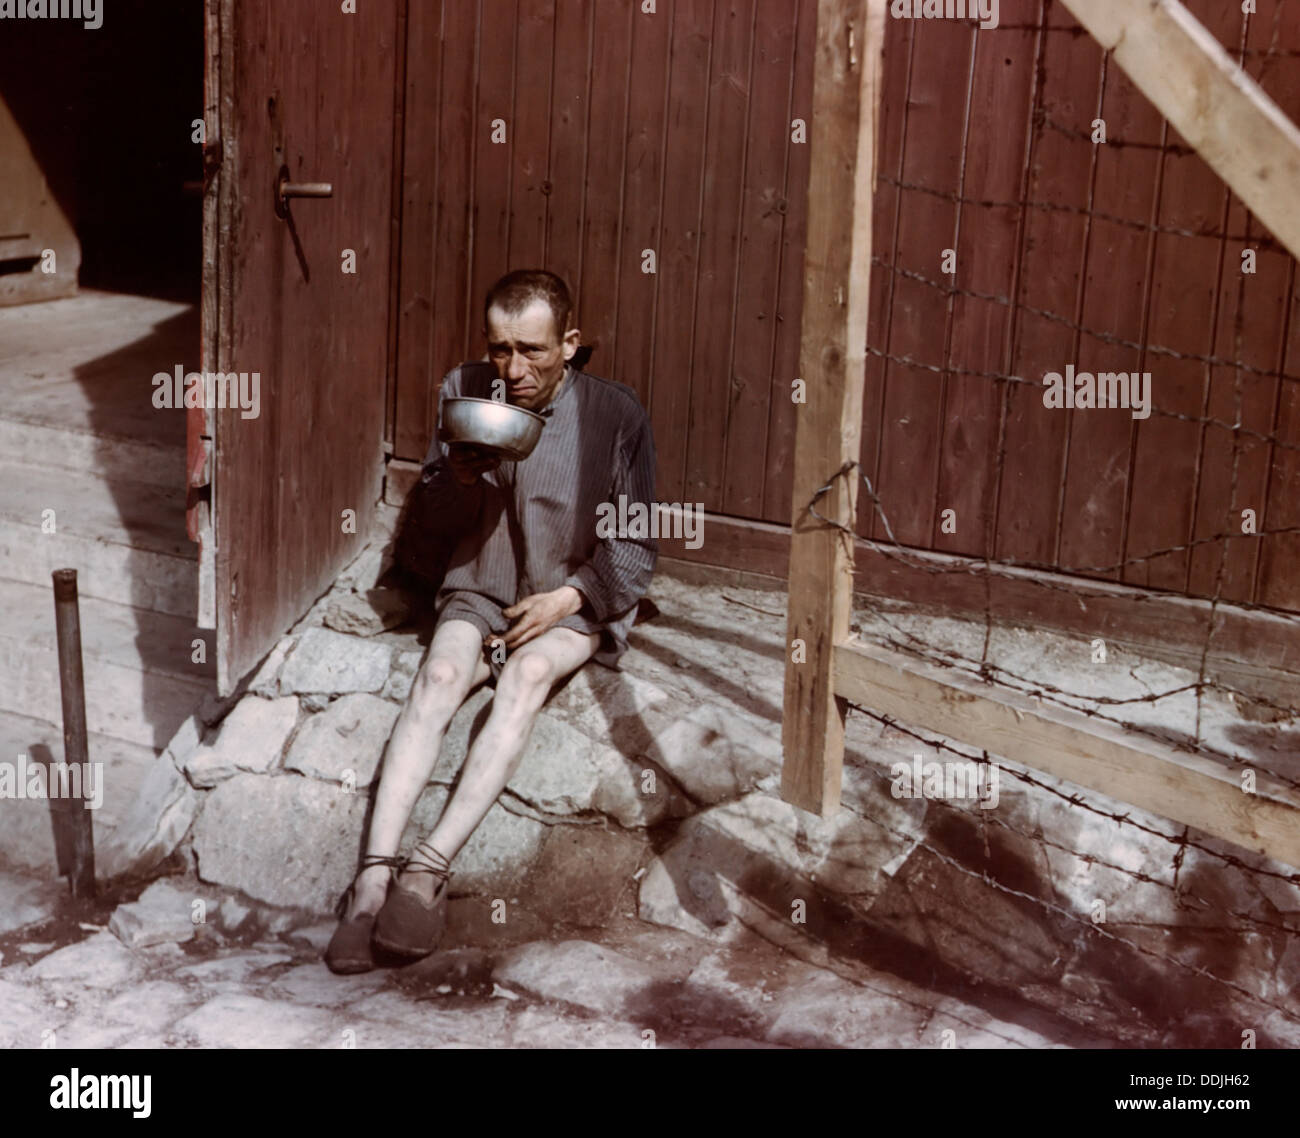 Überlebende der Konzentrationslager Buchenwald nach Camp wurde im April 1945 von US-Armee befreit. Foto Ardean Miller Stockfoto